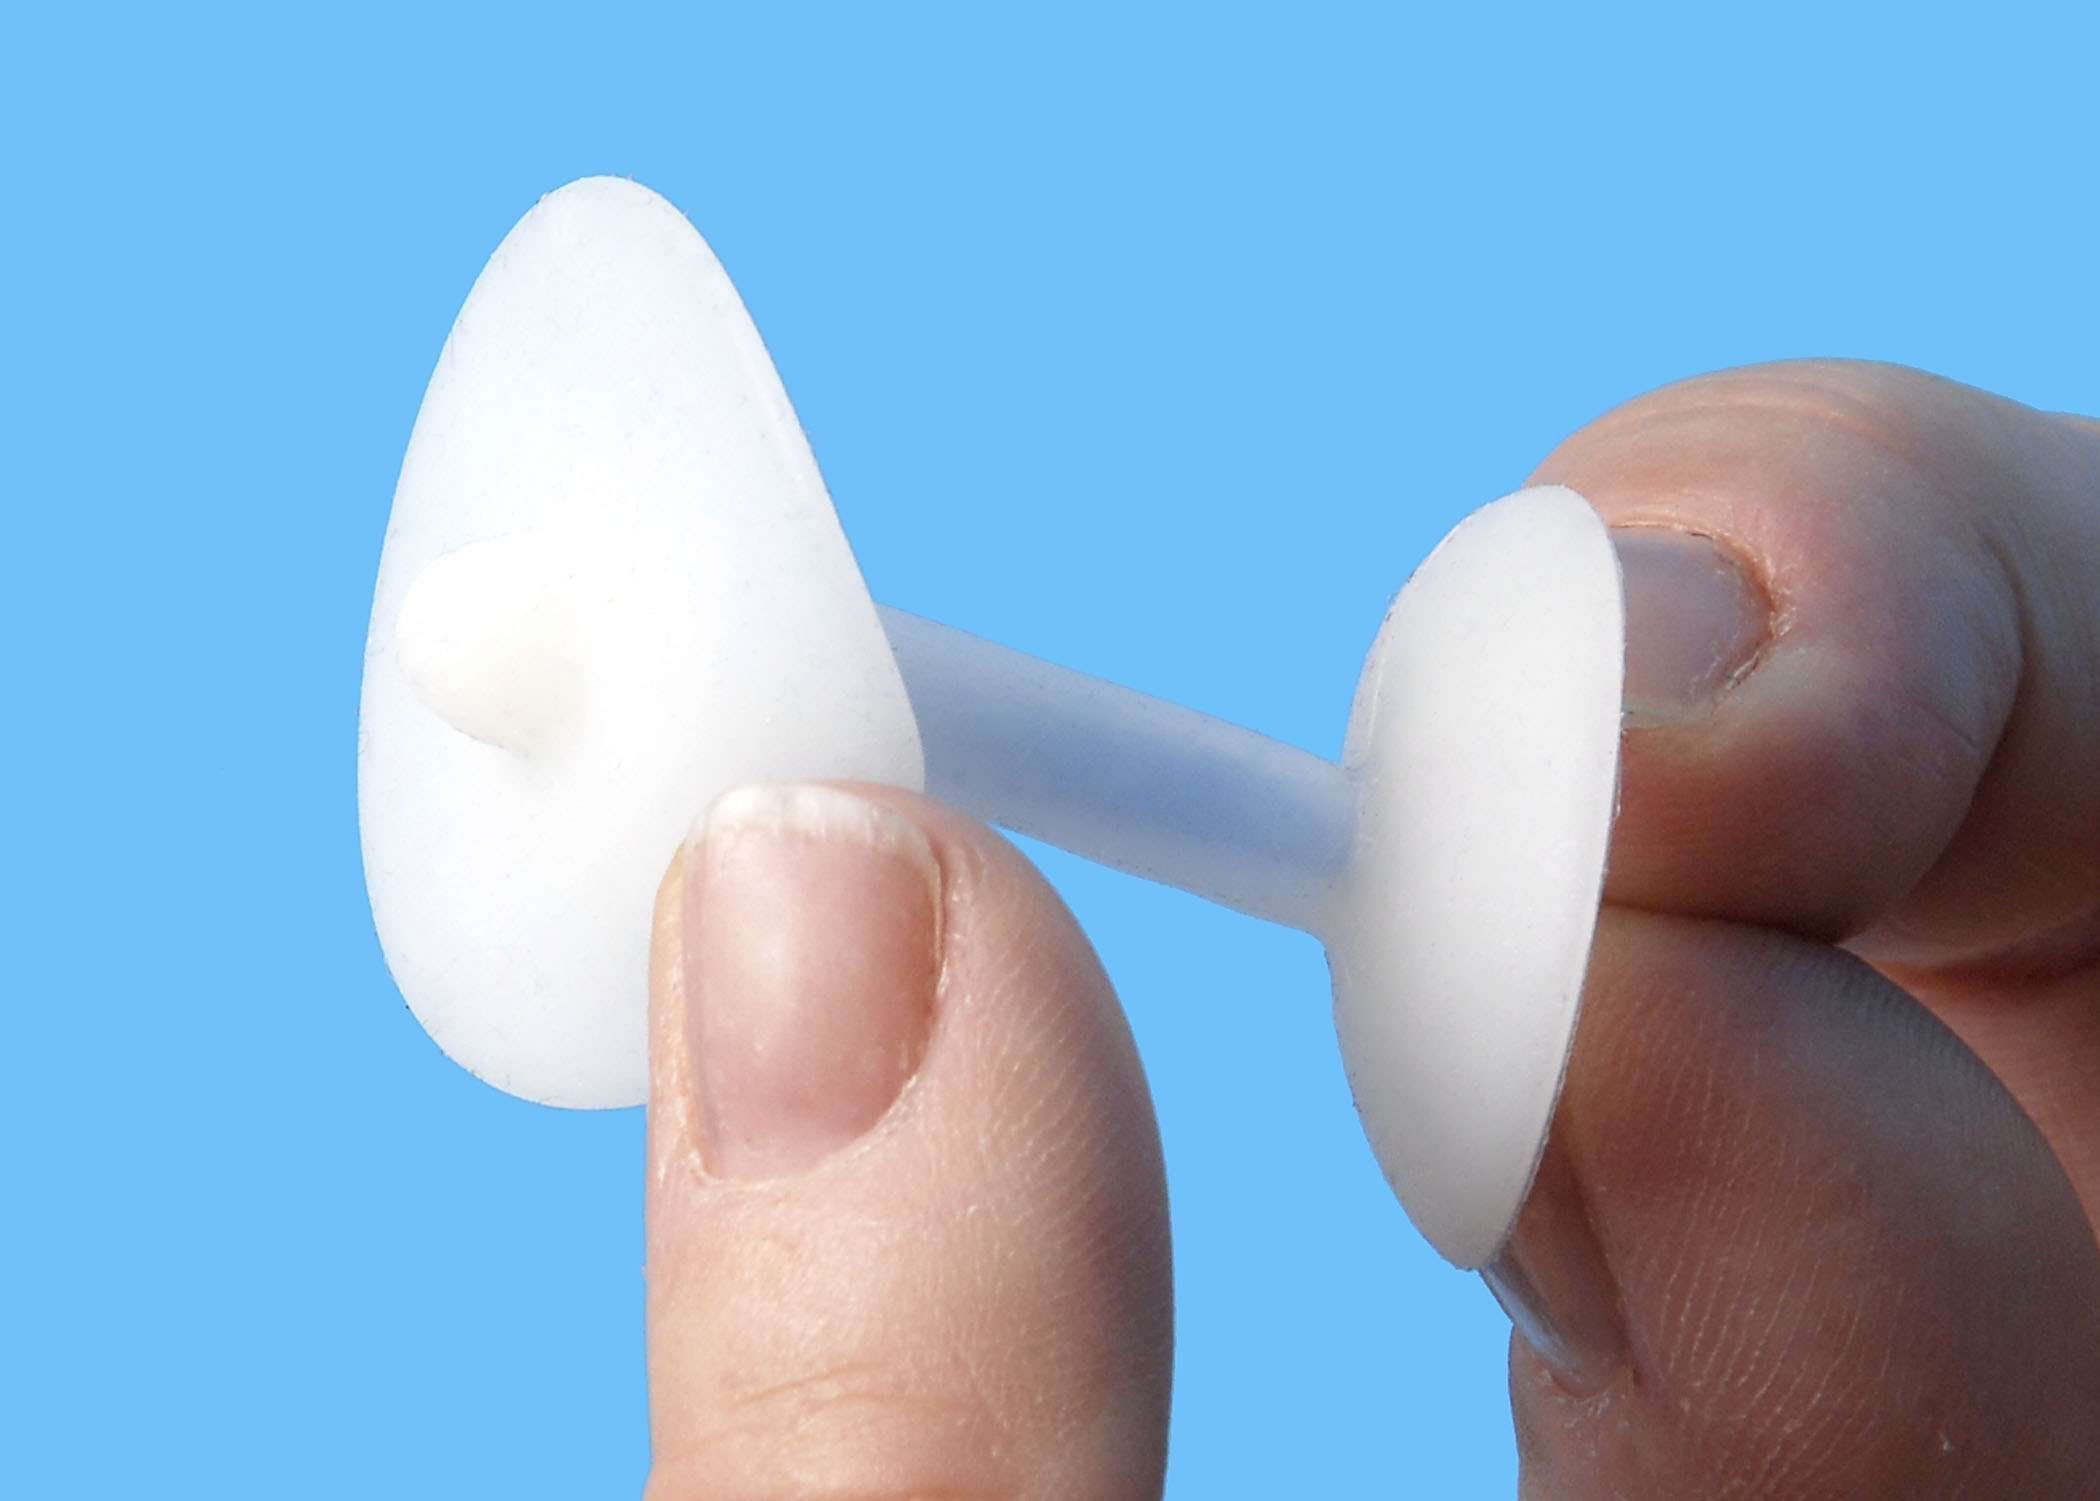 Esquiare reccomend Inserting tampon in anus